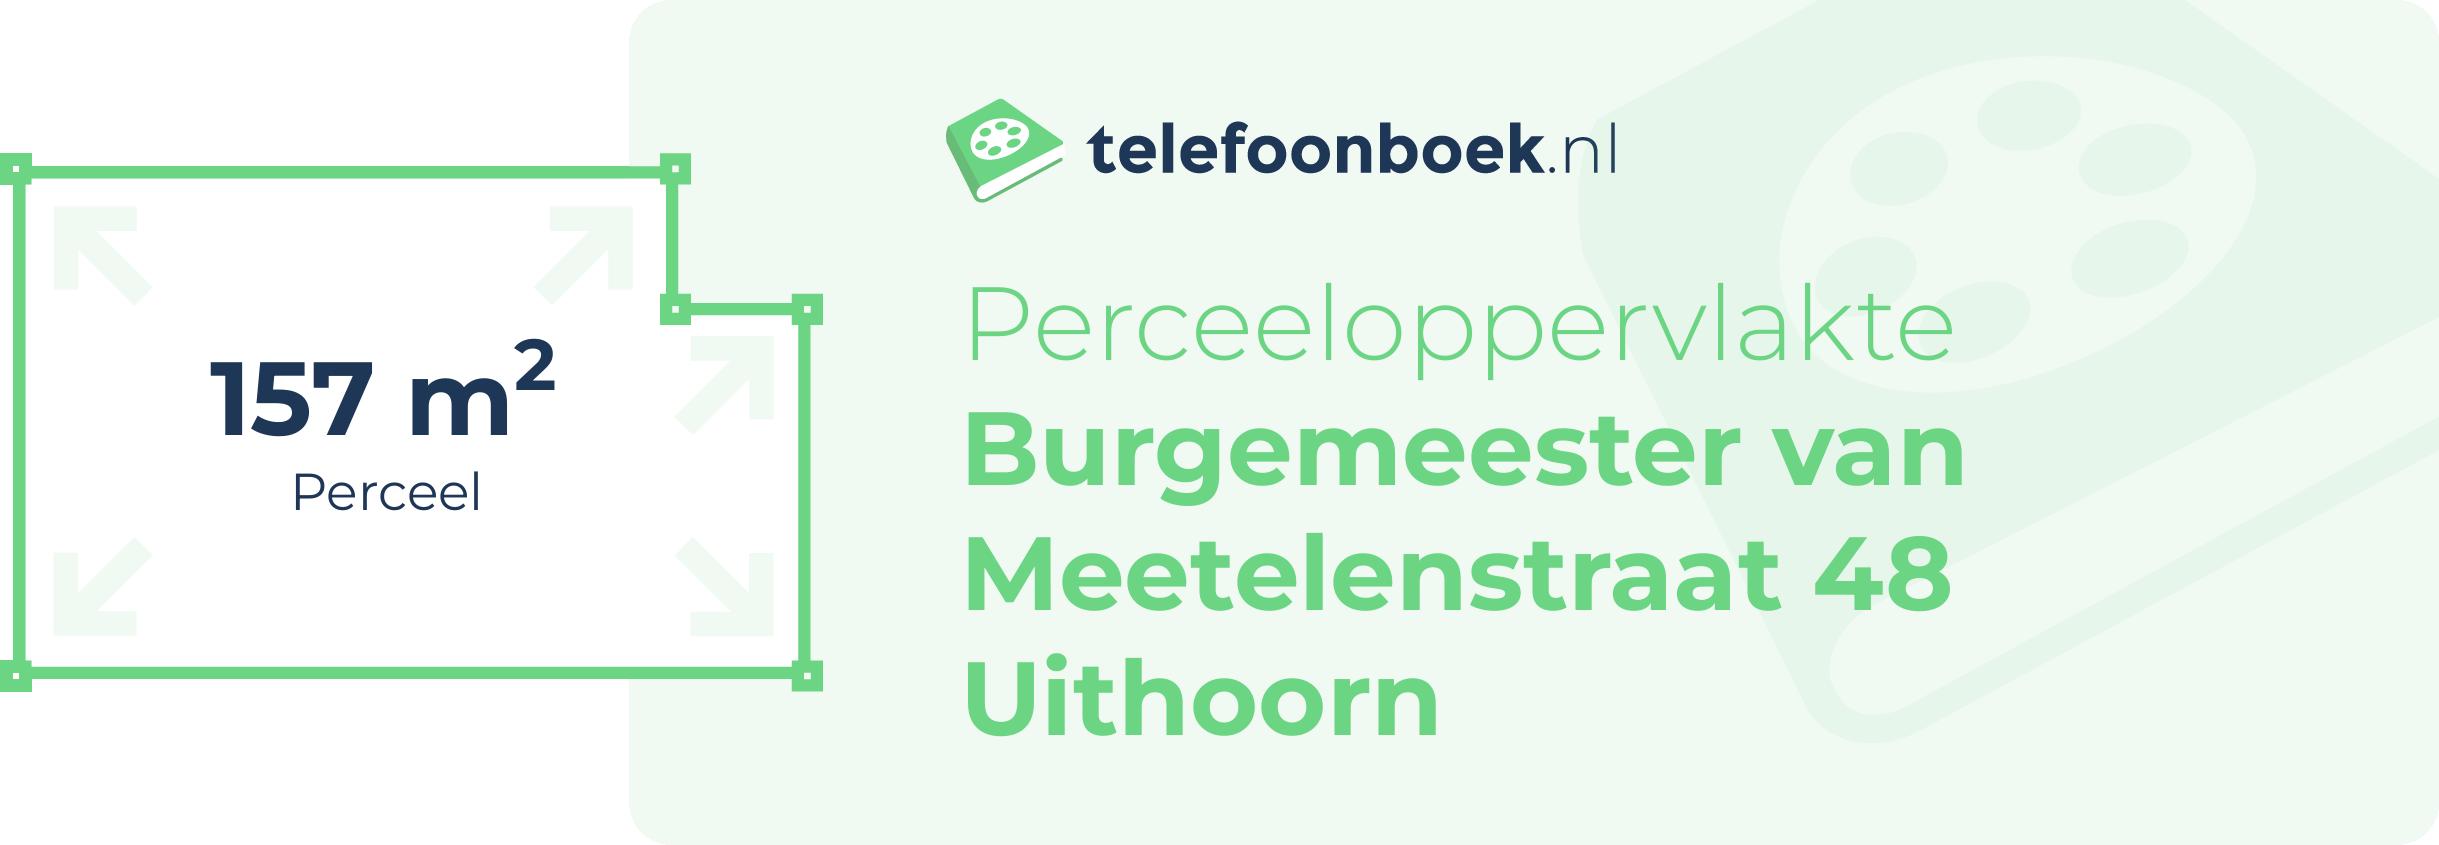 Perceeloppervlakte Burgemeester Van Meetelenstraat 48 Uithoorn